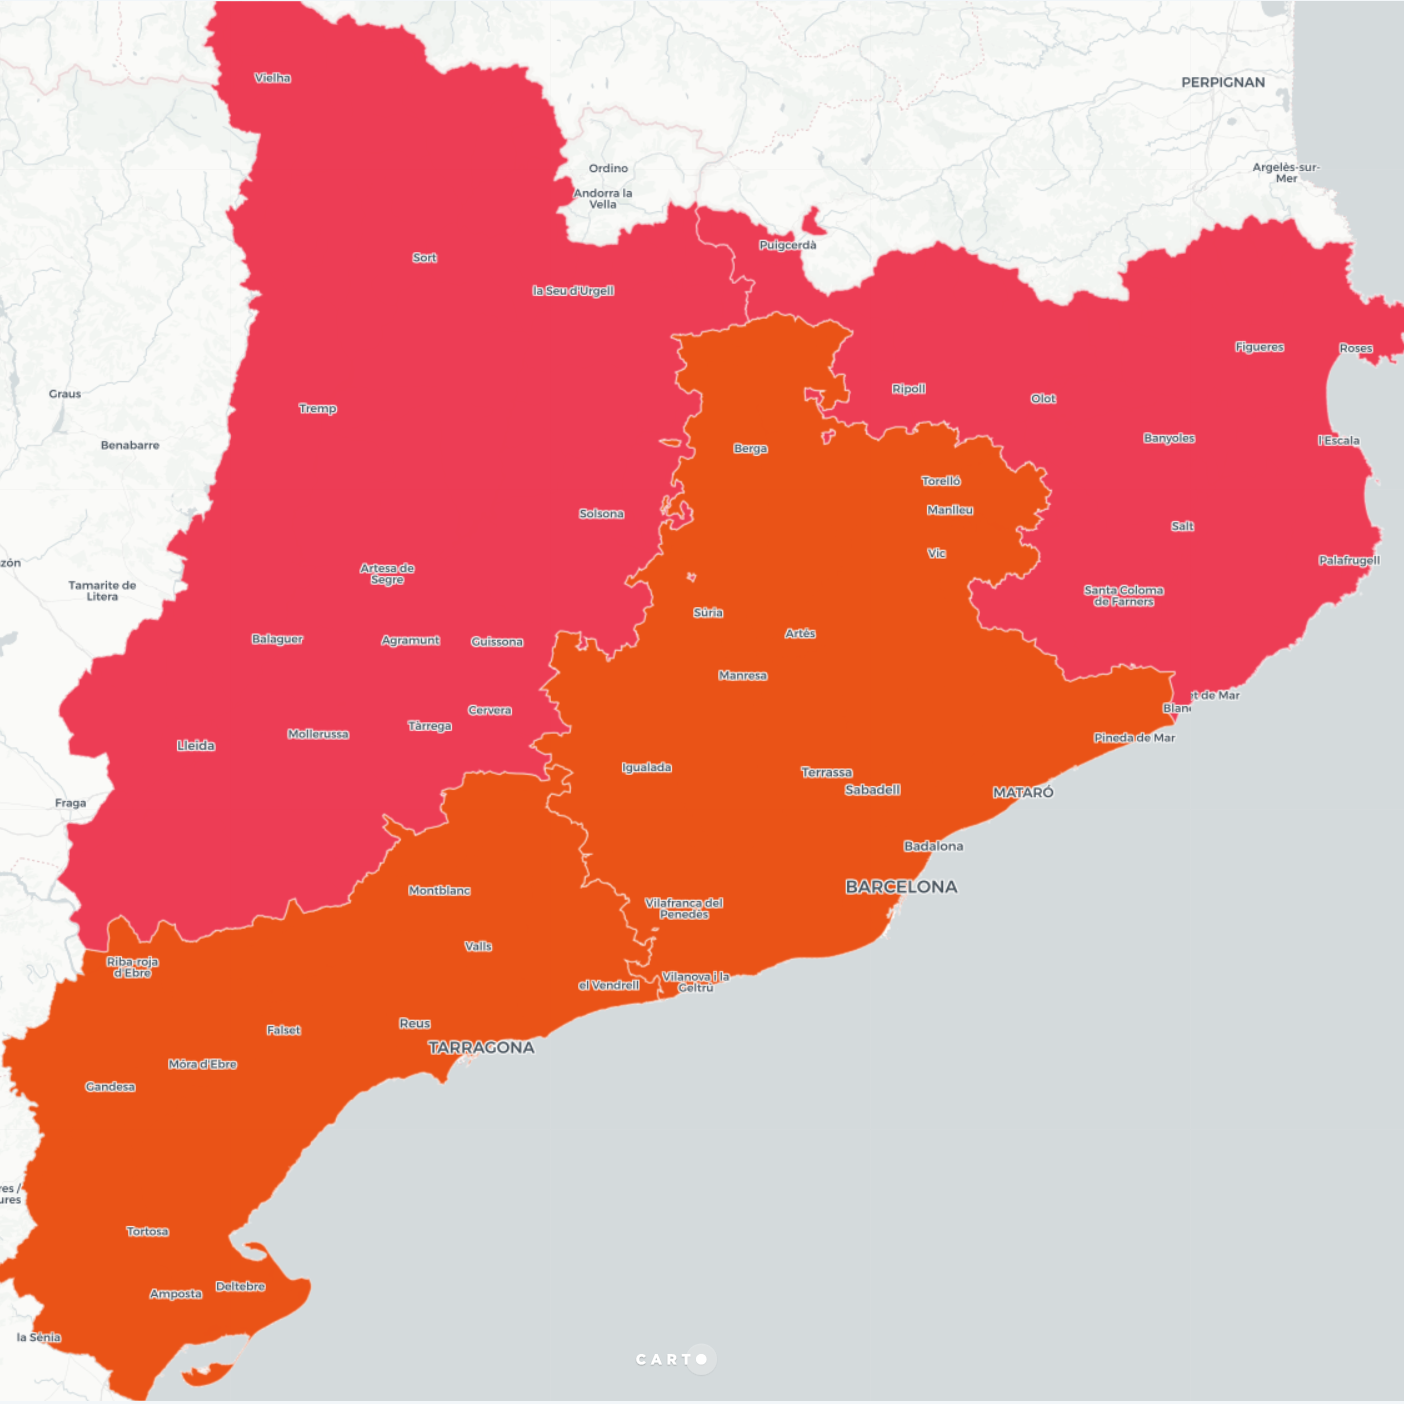 Mapa: El partit més votat per circumscripció electoral